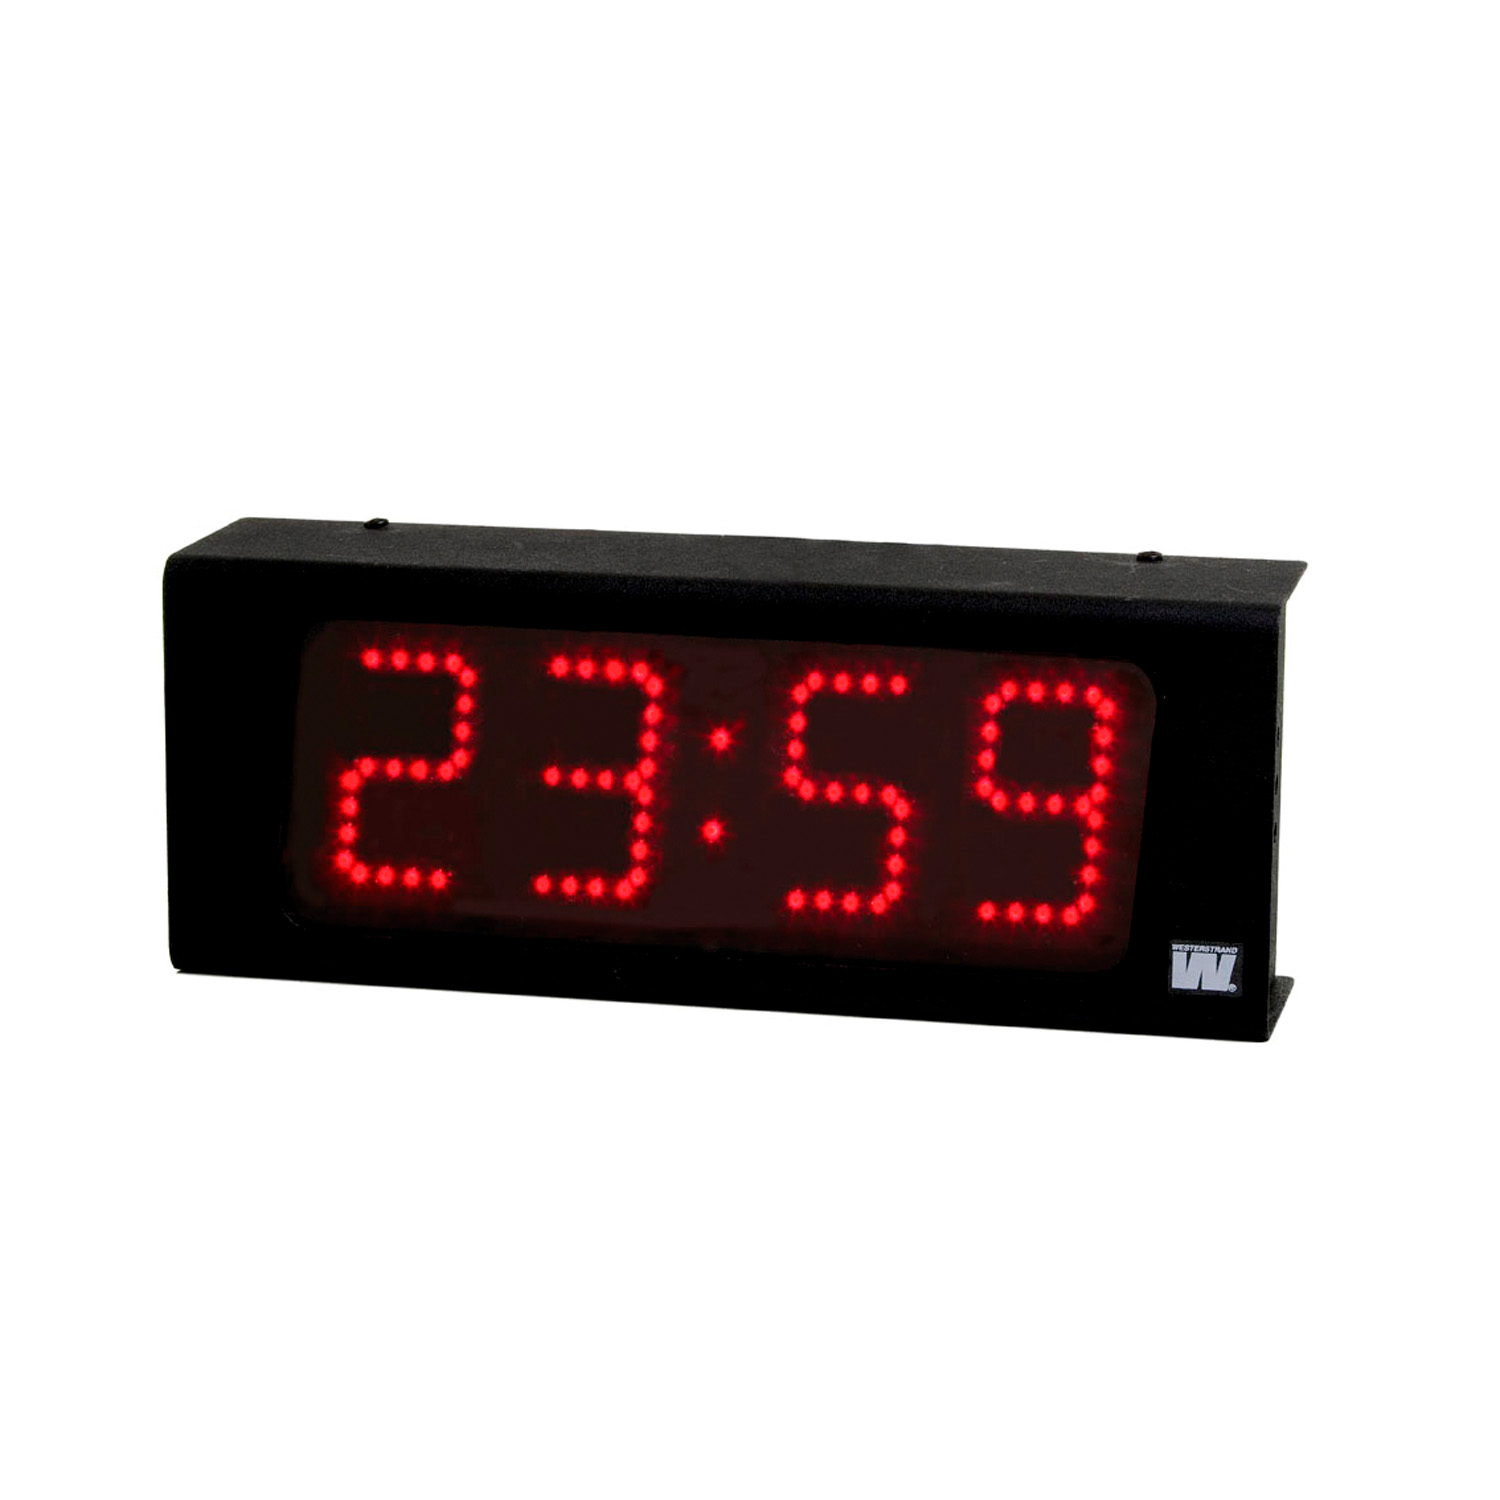 2310601040 Vingtor Stentofon Master clock